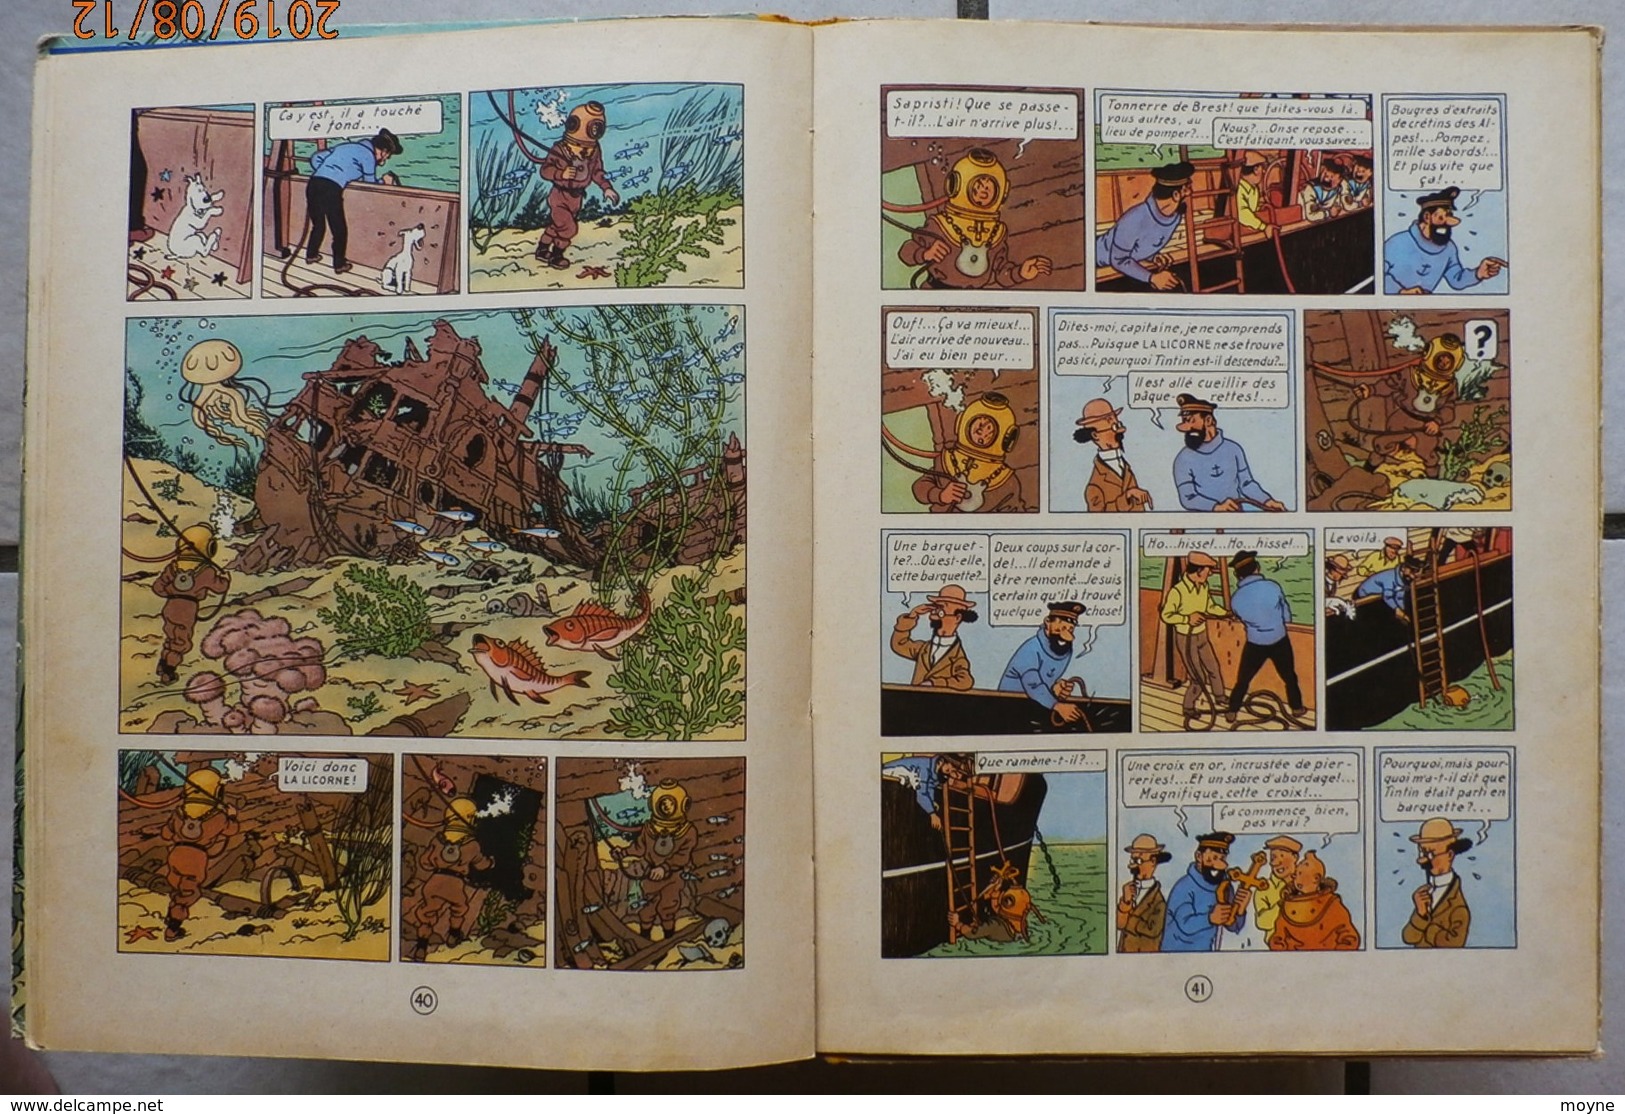 TINTIN -  LE TRESOR DE RACKAM LE ROUGE  - Edition de 1954 sous référence B11 - dos jaune ...